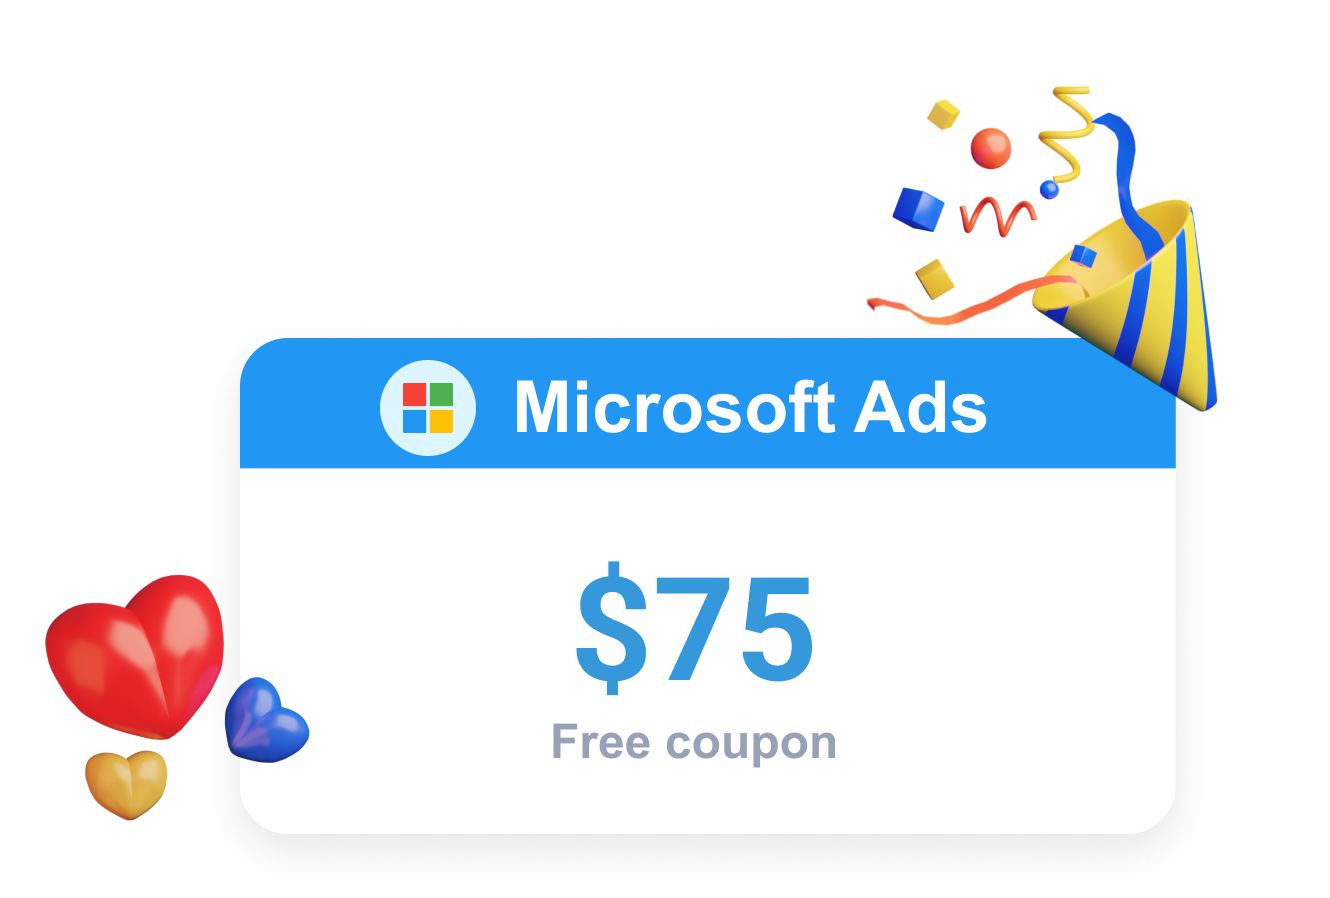  Clever Ads  एक बिंग  Ads  मुक्त कूपन के रूप में एक माइक्रोसॉफ्ट  Ads  प्रोमो प्रदान करता है